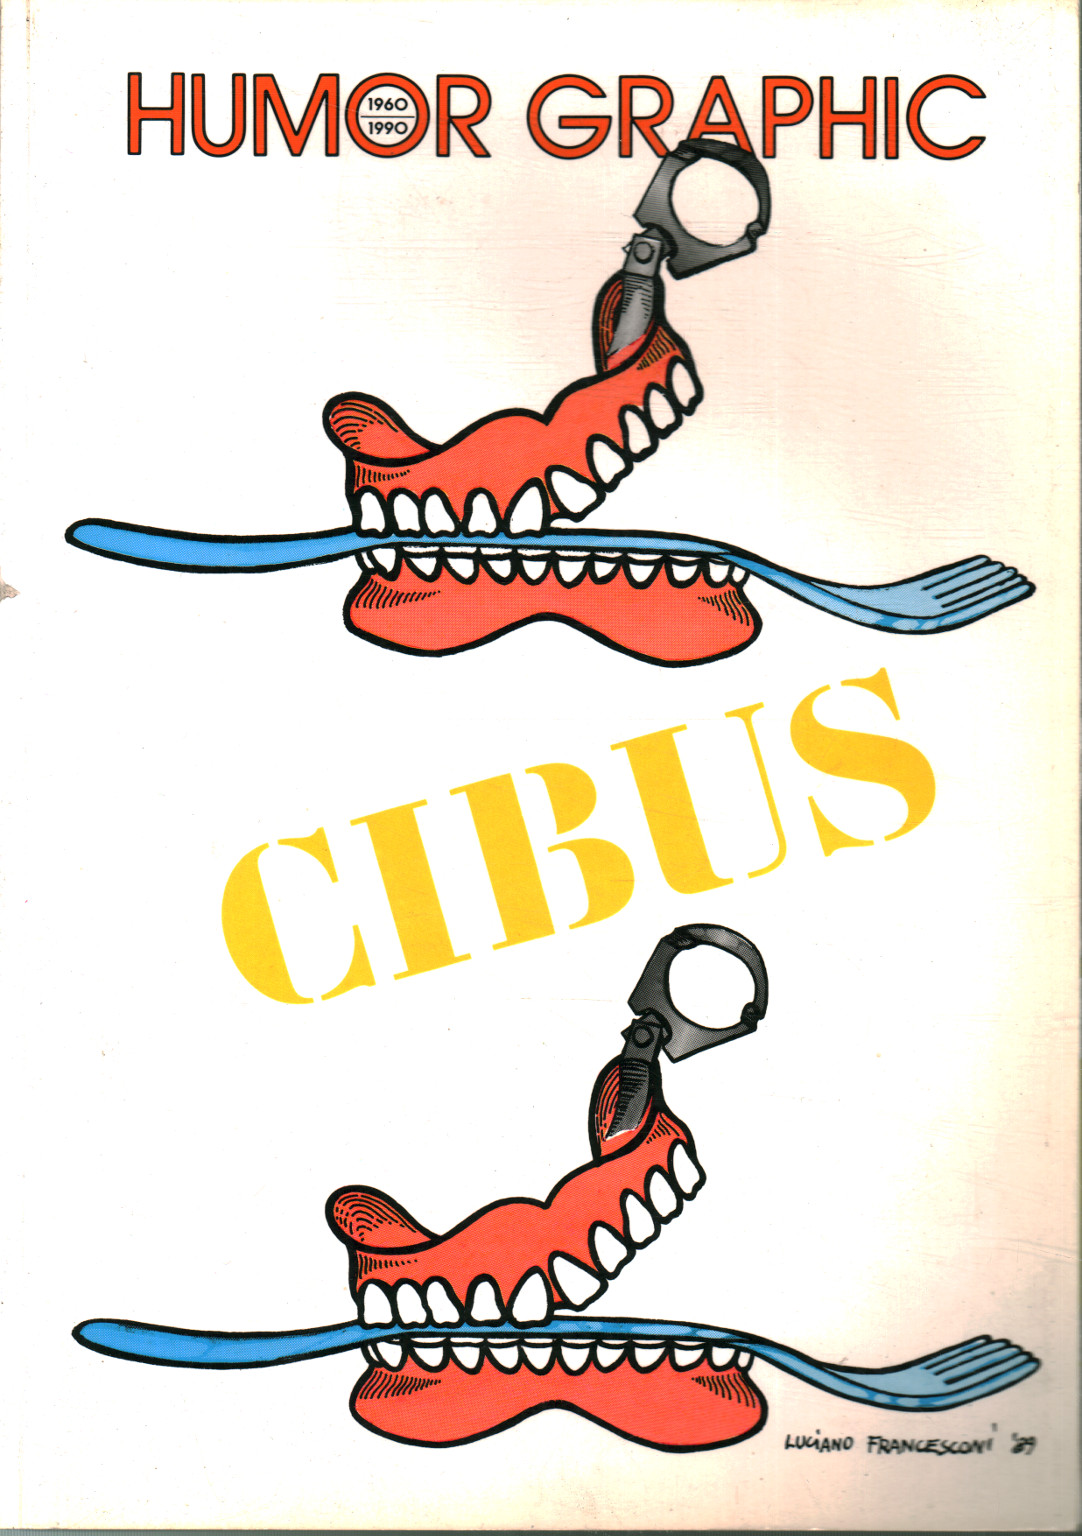 Humor Graphic (1960-1990 n.29) Cibus,Humor Graphic (1960-1990 n.29) Cibus